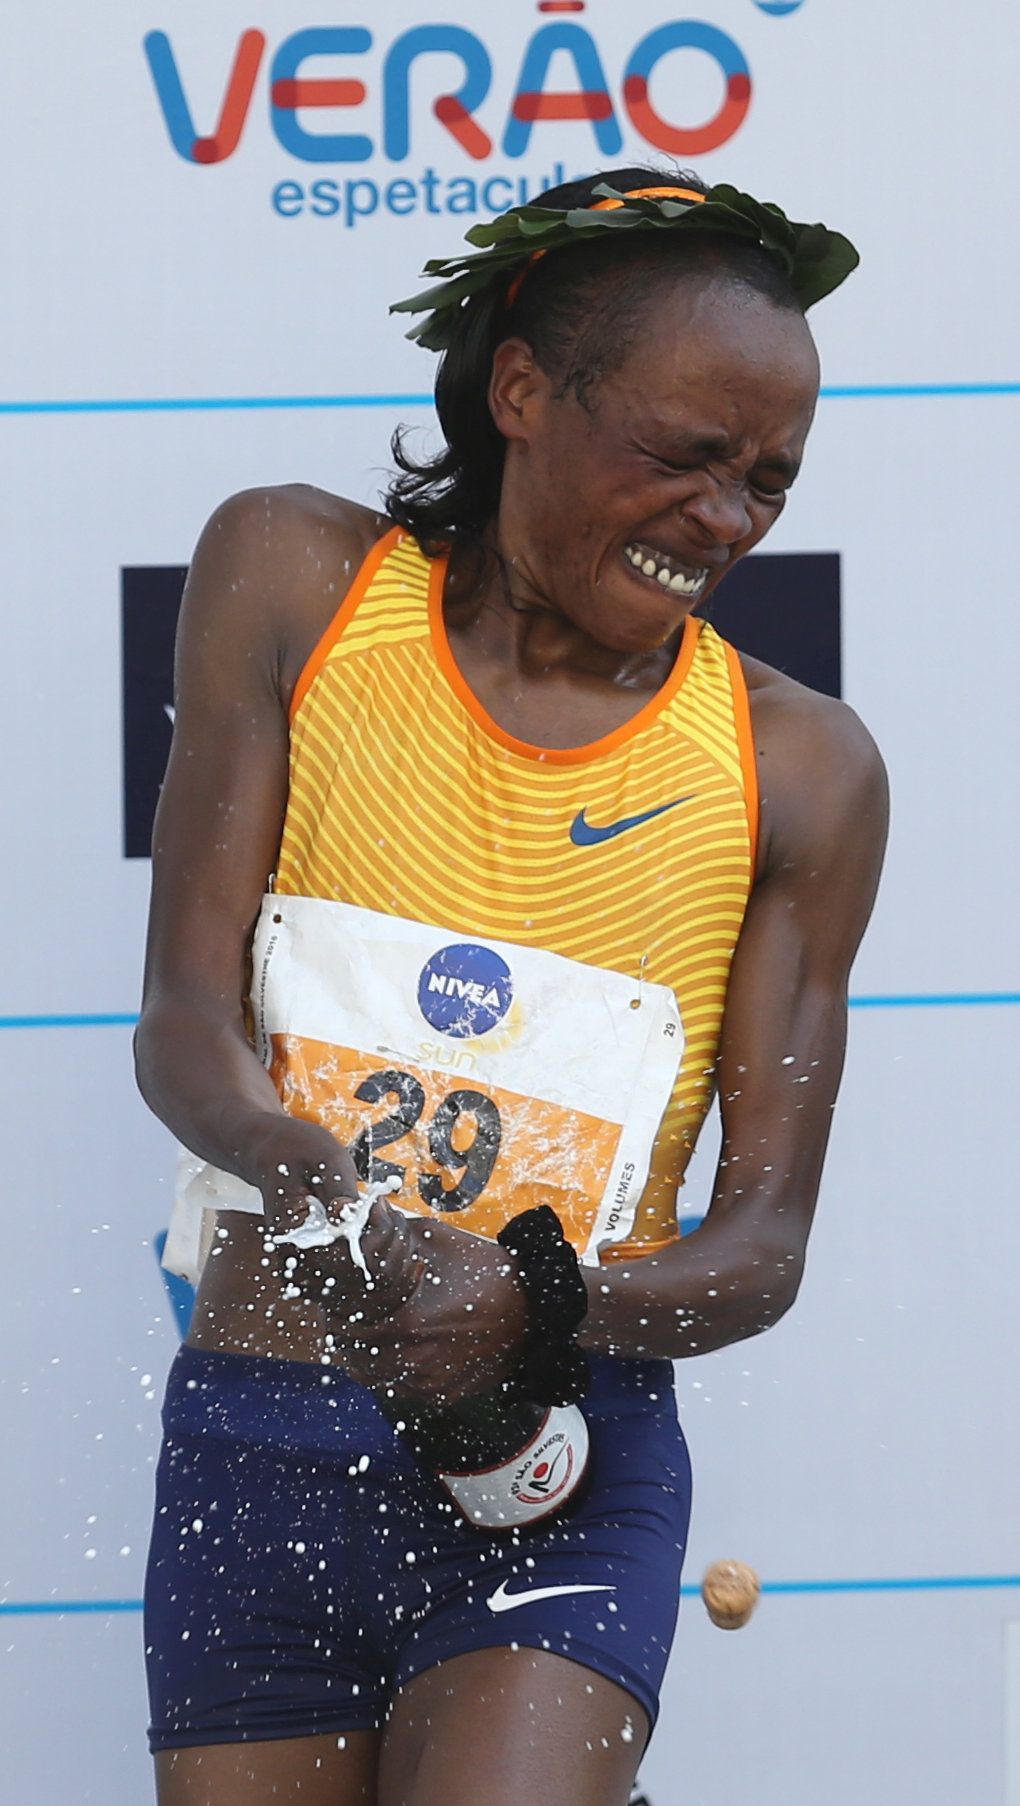 Silvestrovský běh v Sao Paulu 2016: Jemima Sumgongová